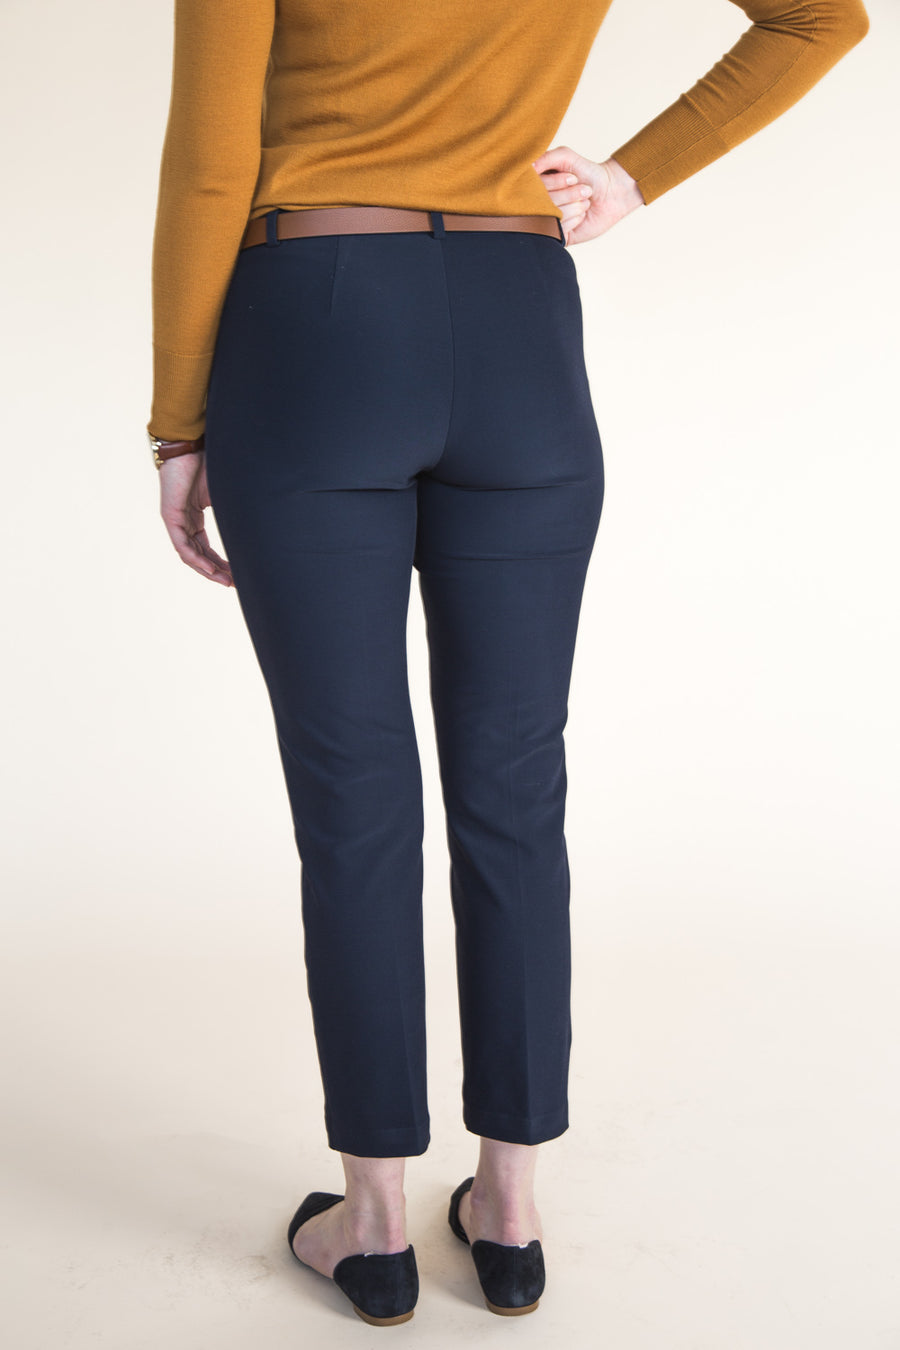 Sasha Trousers 2.0 : : Nettie Bodysuit : : A Closet Case Patterns